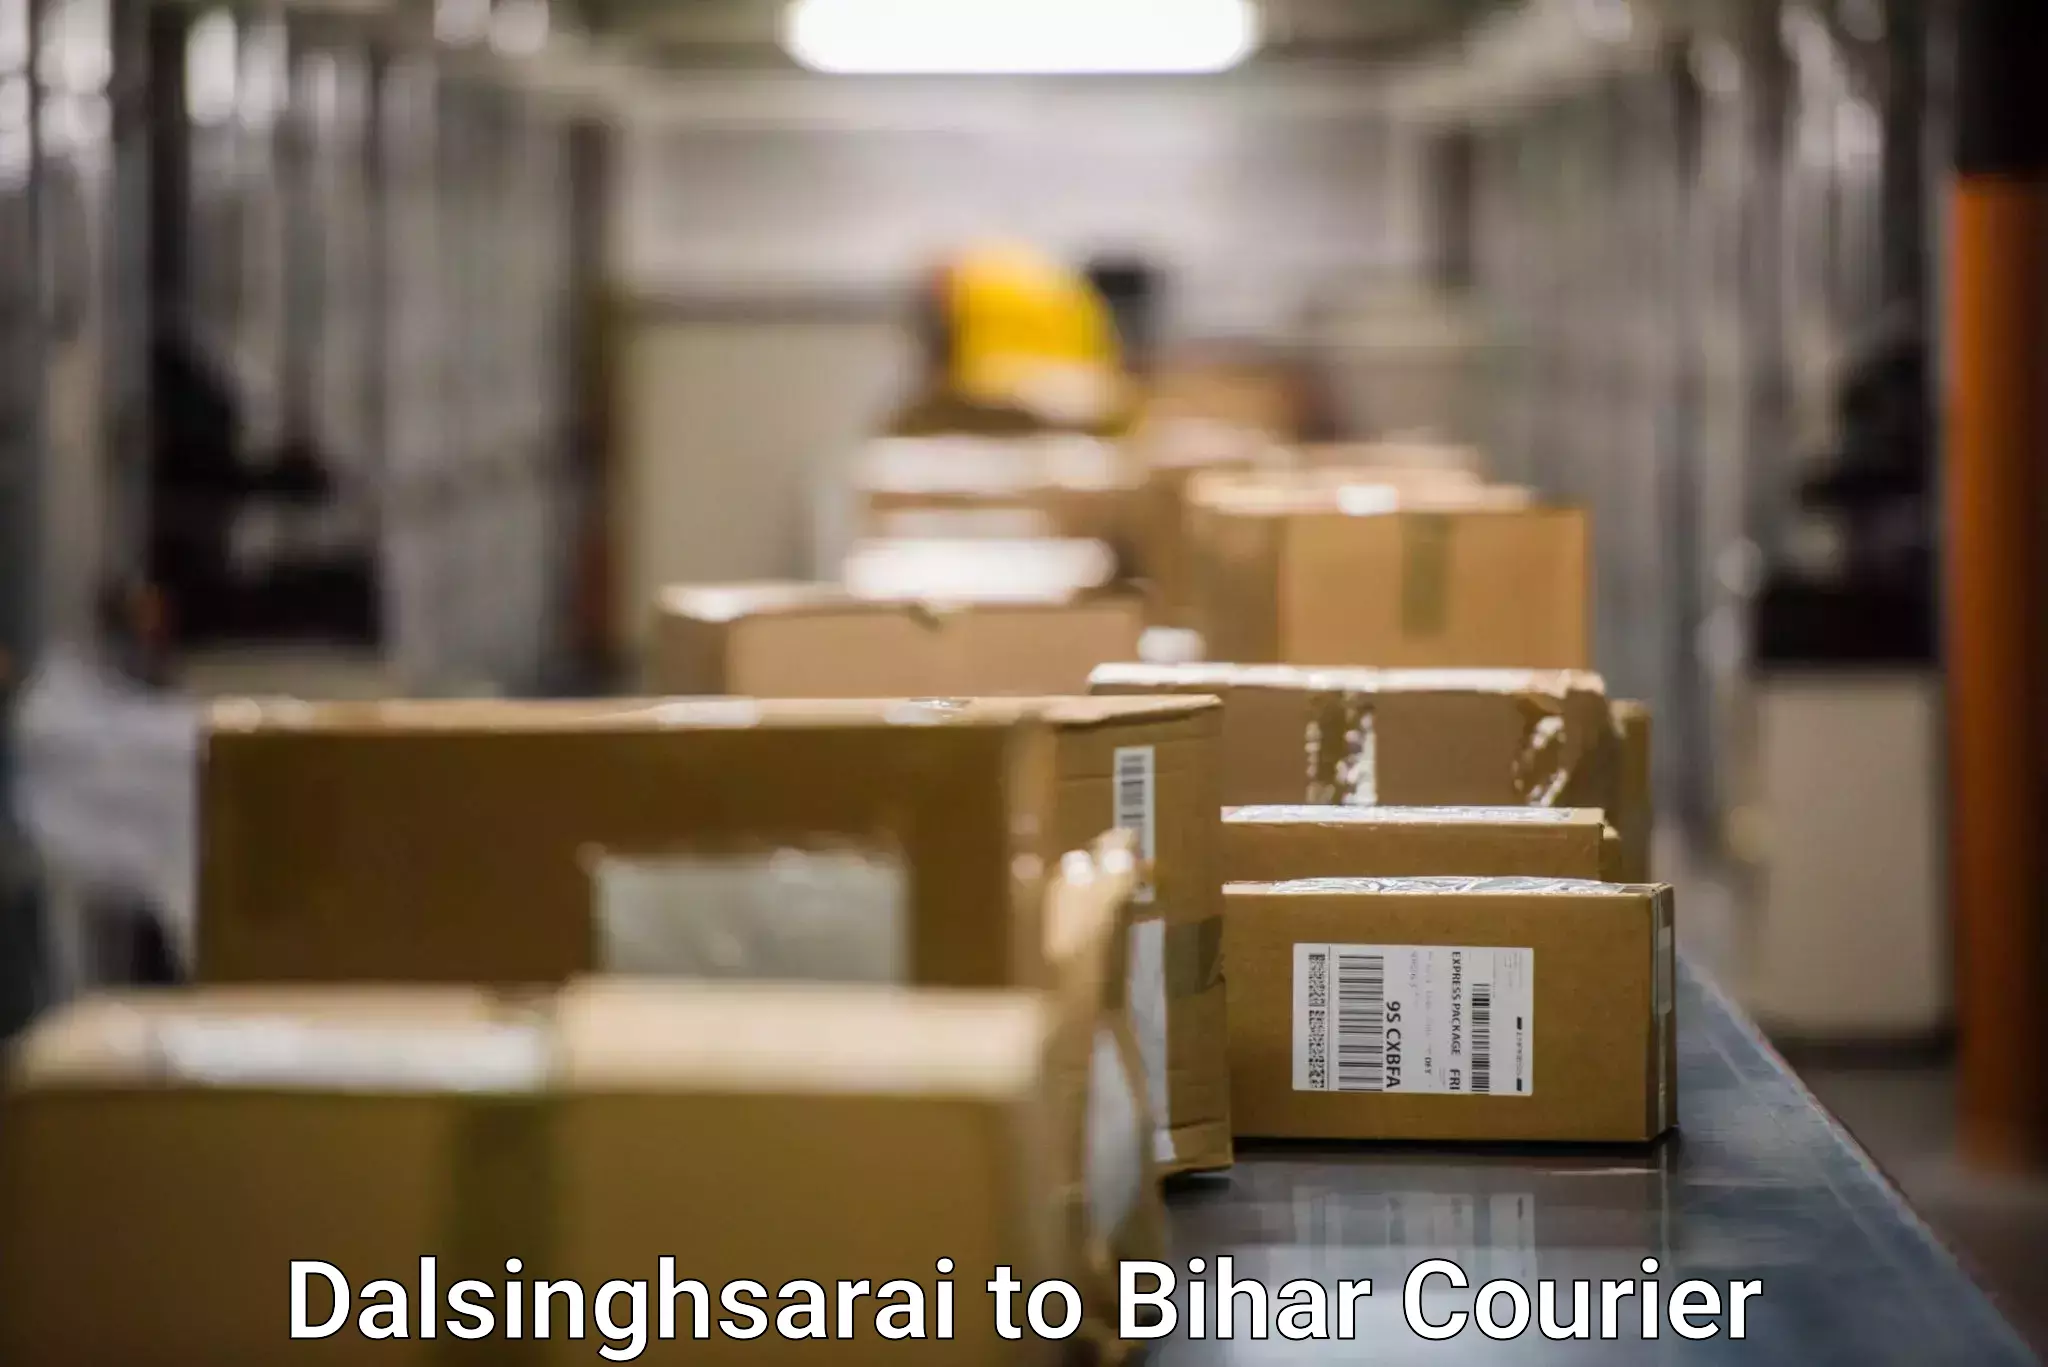 Global courier networks Dalsinghsarai to Kaluahi